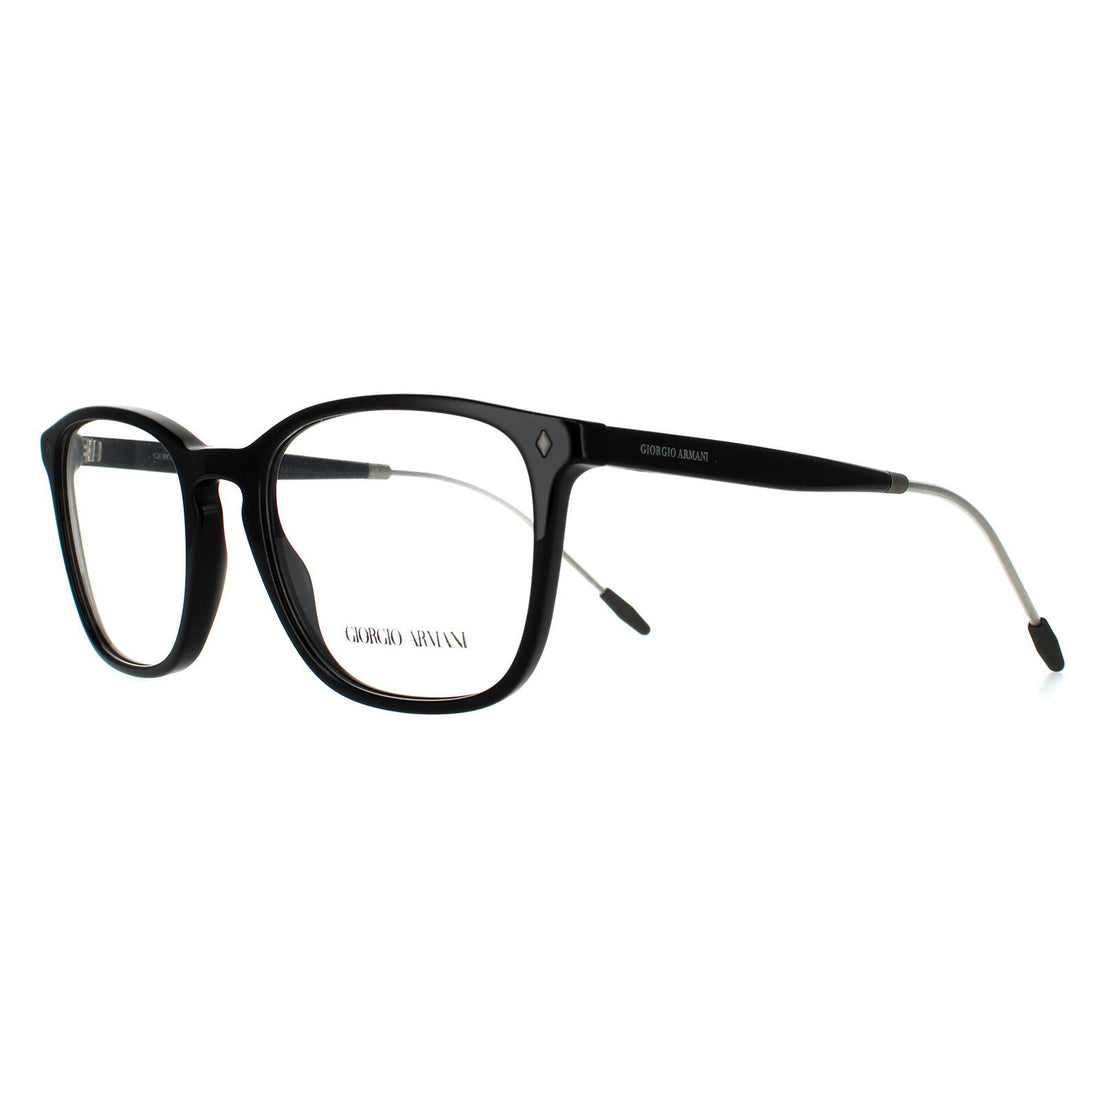 Giorgio Armani AR7171 Glasses Frames